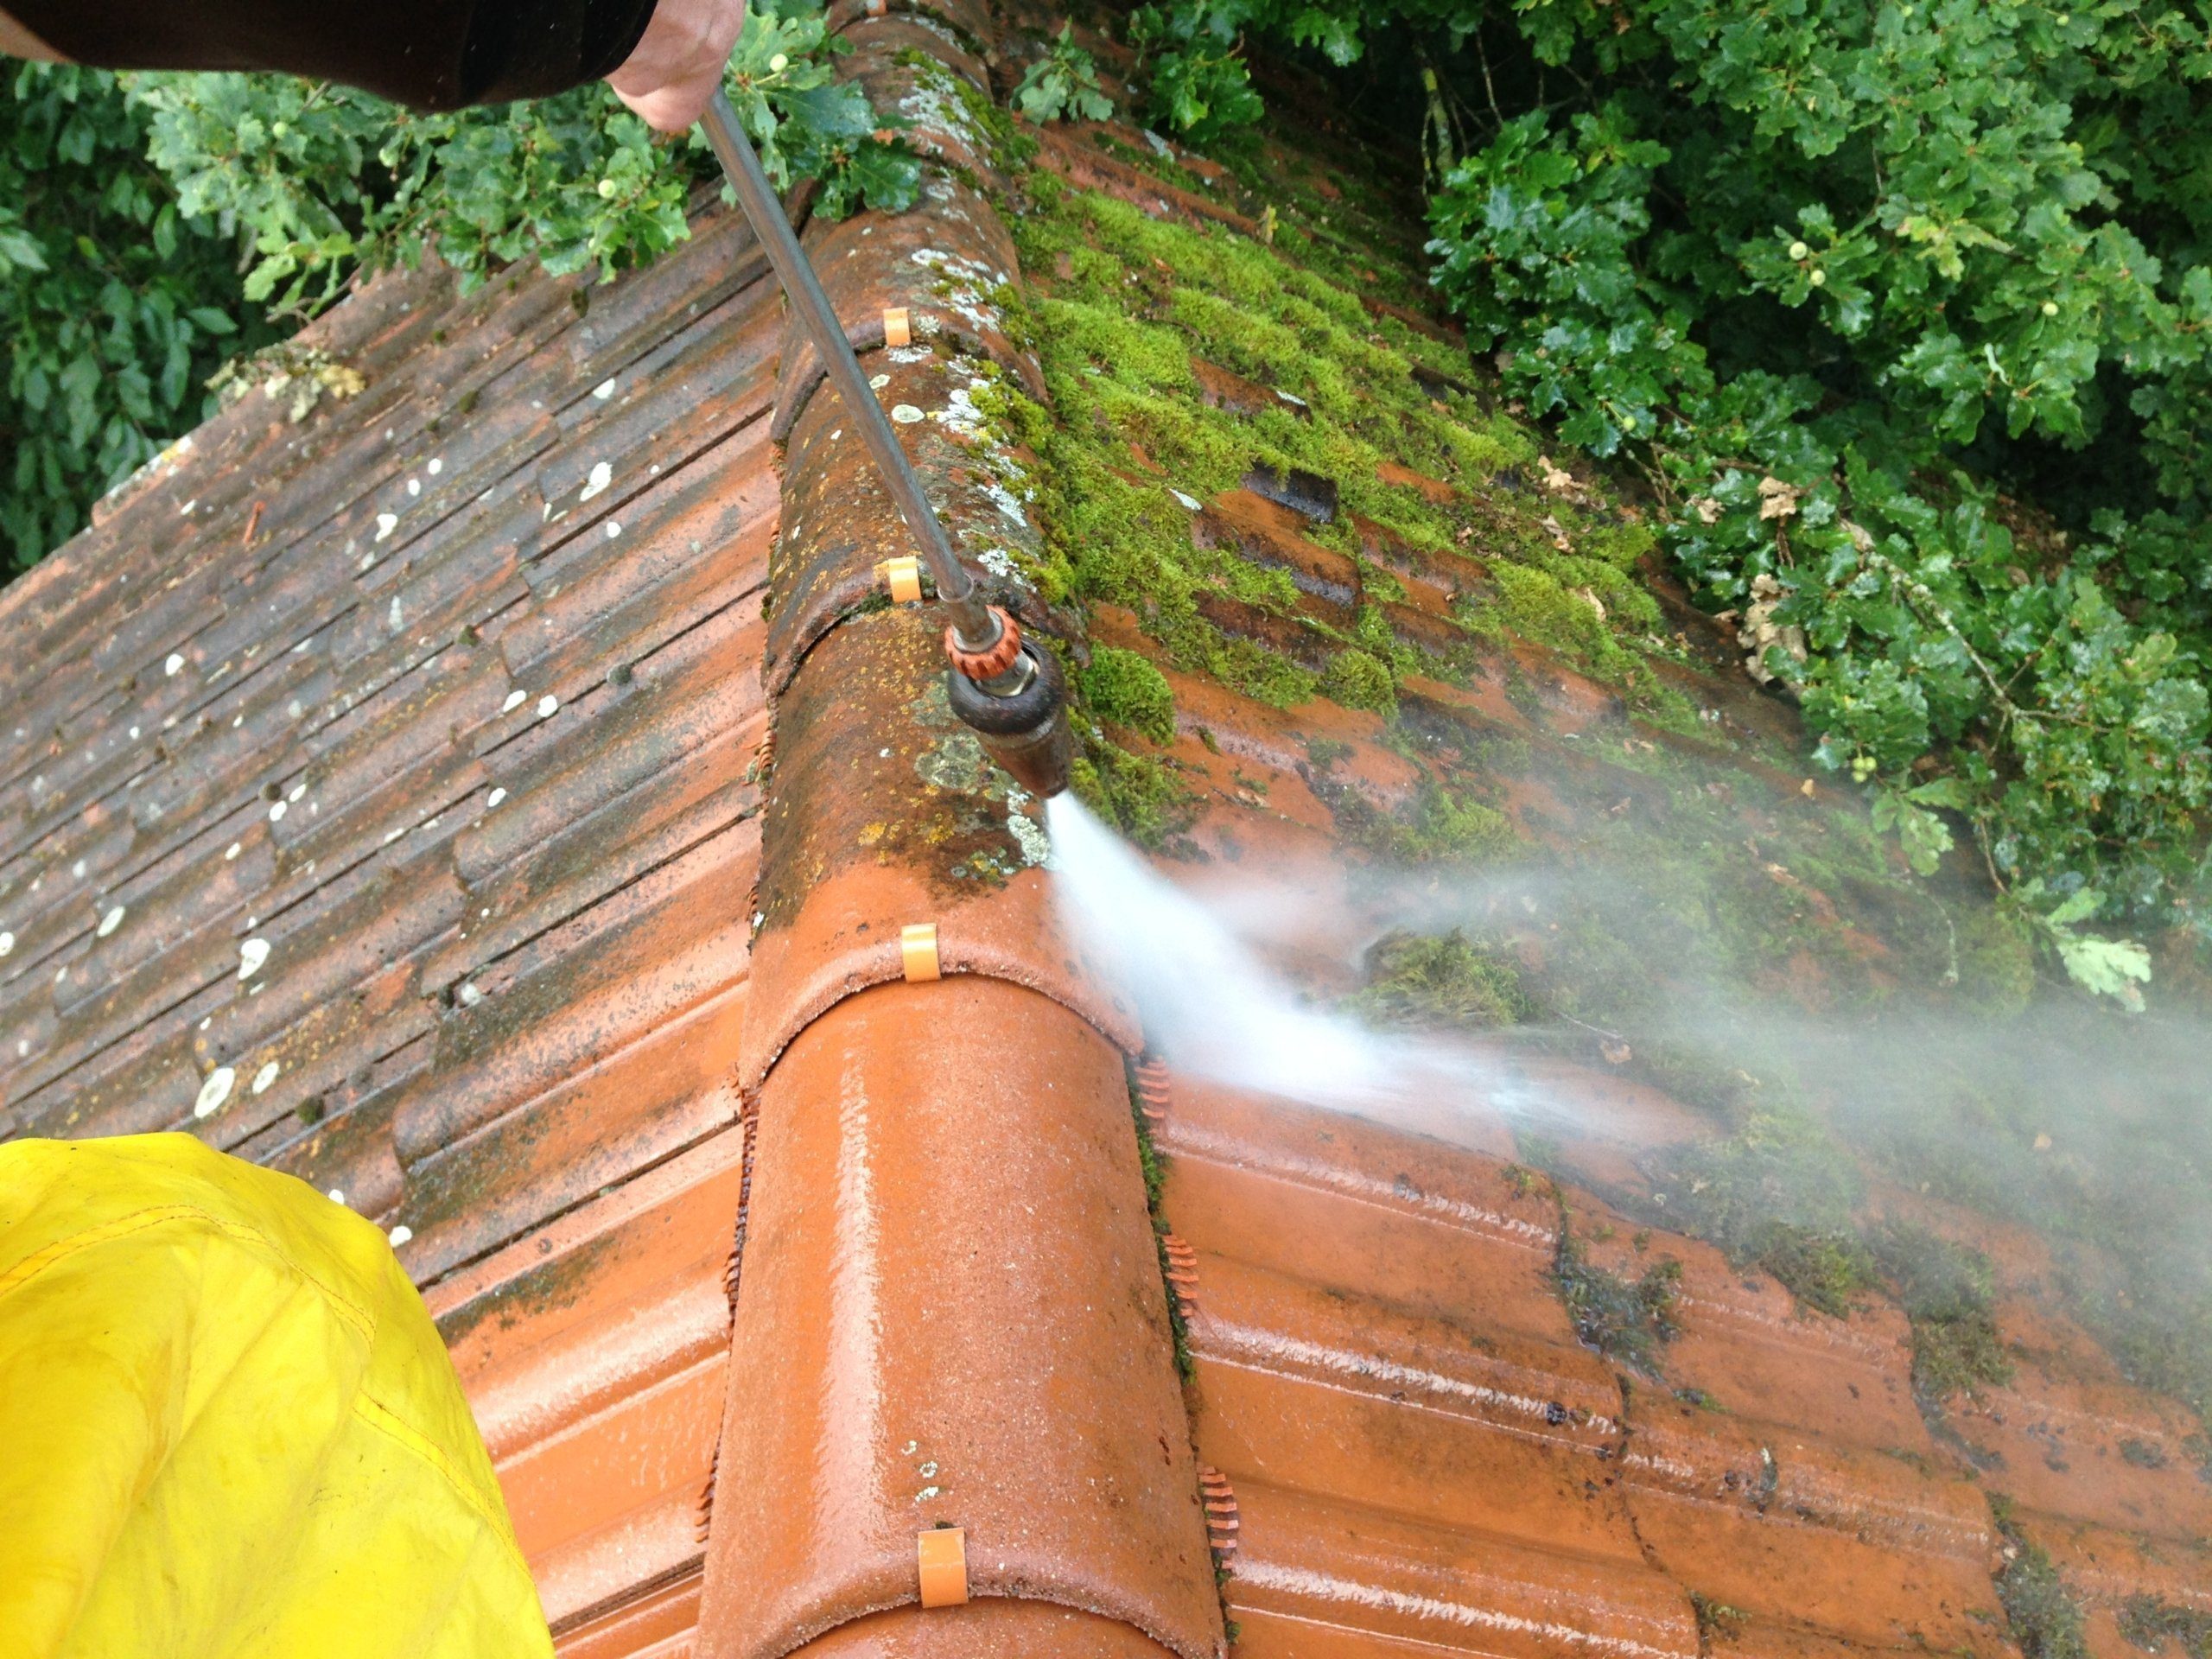 Dachreinigung mit Dachbeschichtung 5 moos vom dach entfernen scaled